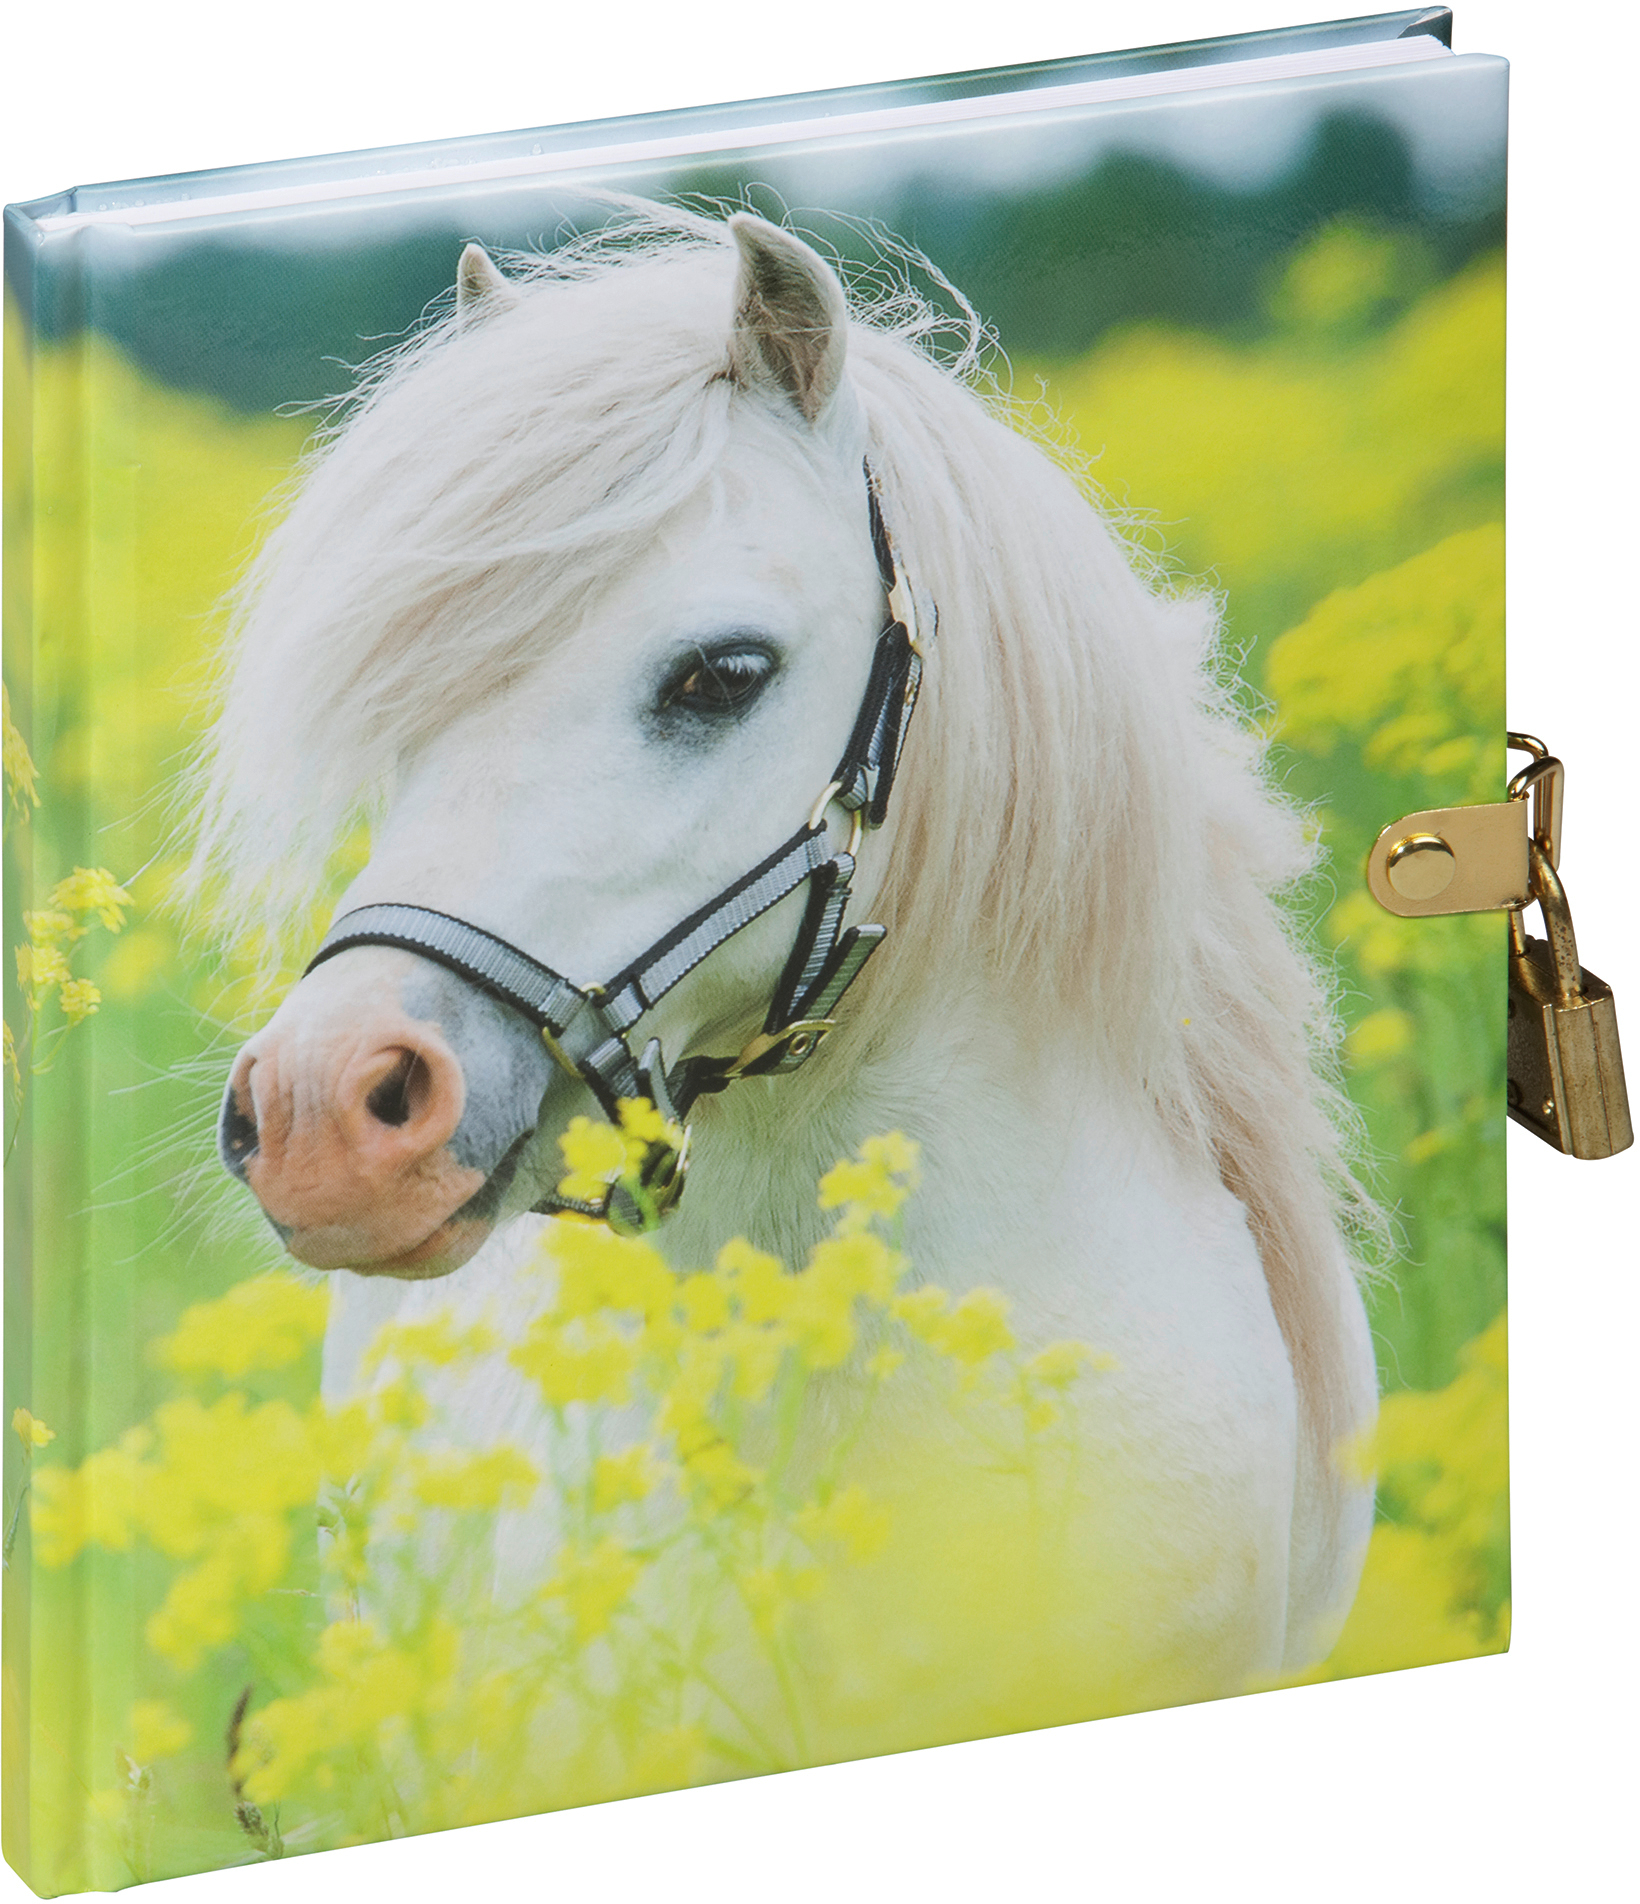 PAGNA Tagebuch 20241-15 kleines Pony 128S